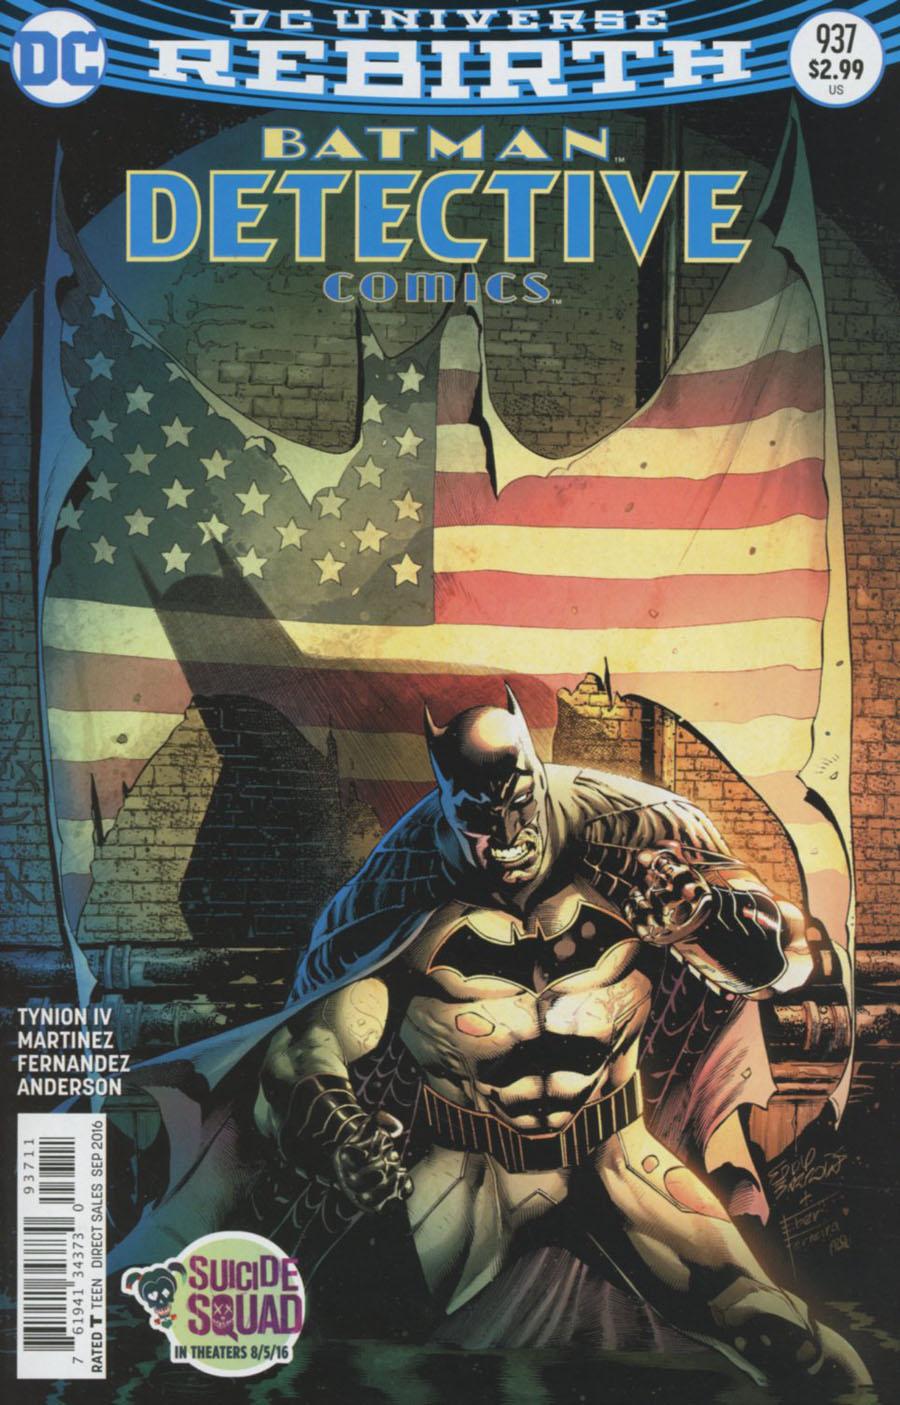 Detective Comics Vol. 2 #937